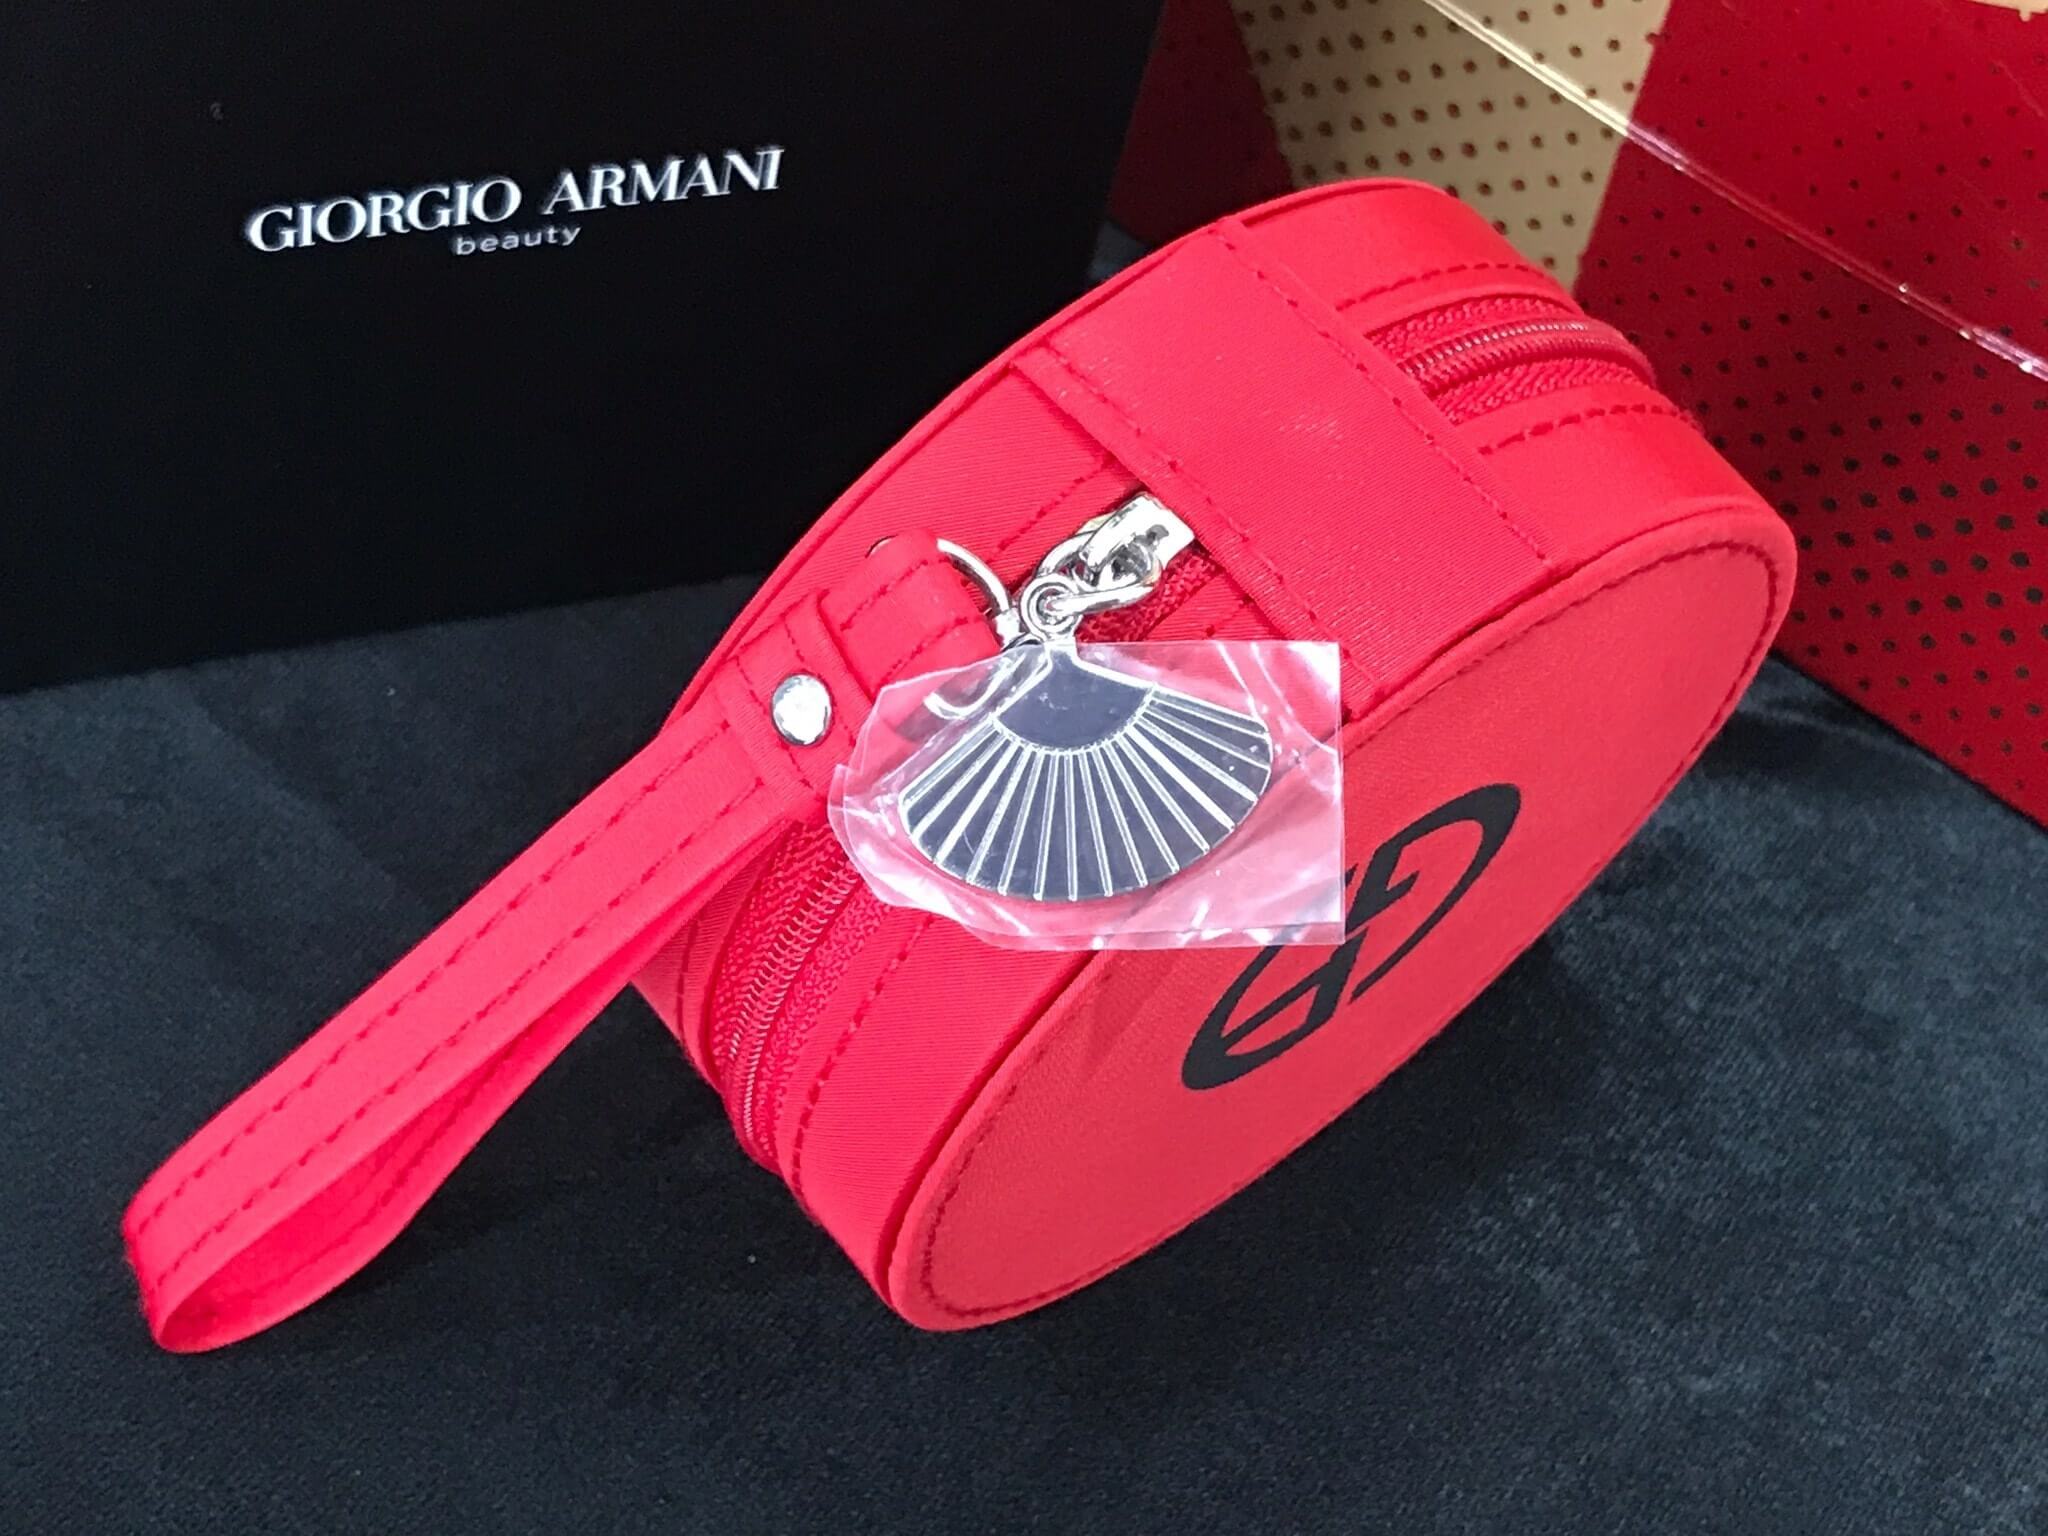 Giorgio Armani Beauty Red Cushion Vanity Bag อะไหล่เงิน ตกแต่งด้วยพวงกุญแจปั๊มโลโก้แบรนด์ มีสายคล้องข้อมือ ด้านหน้า ปั๊มโลโก้แบรด์หรูหราตามแบบฉบับแบรนด์ น้ำหนักเบา แข็งแรง ทนทาน วัสดุอย่างดี